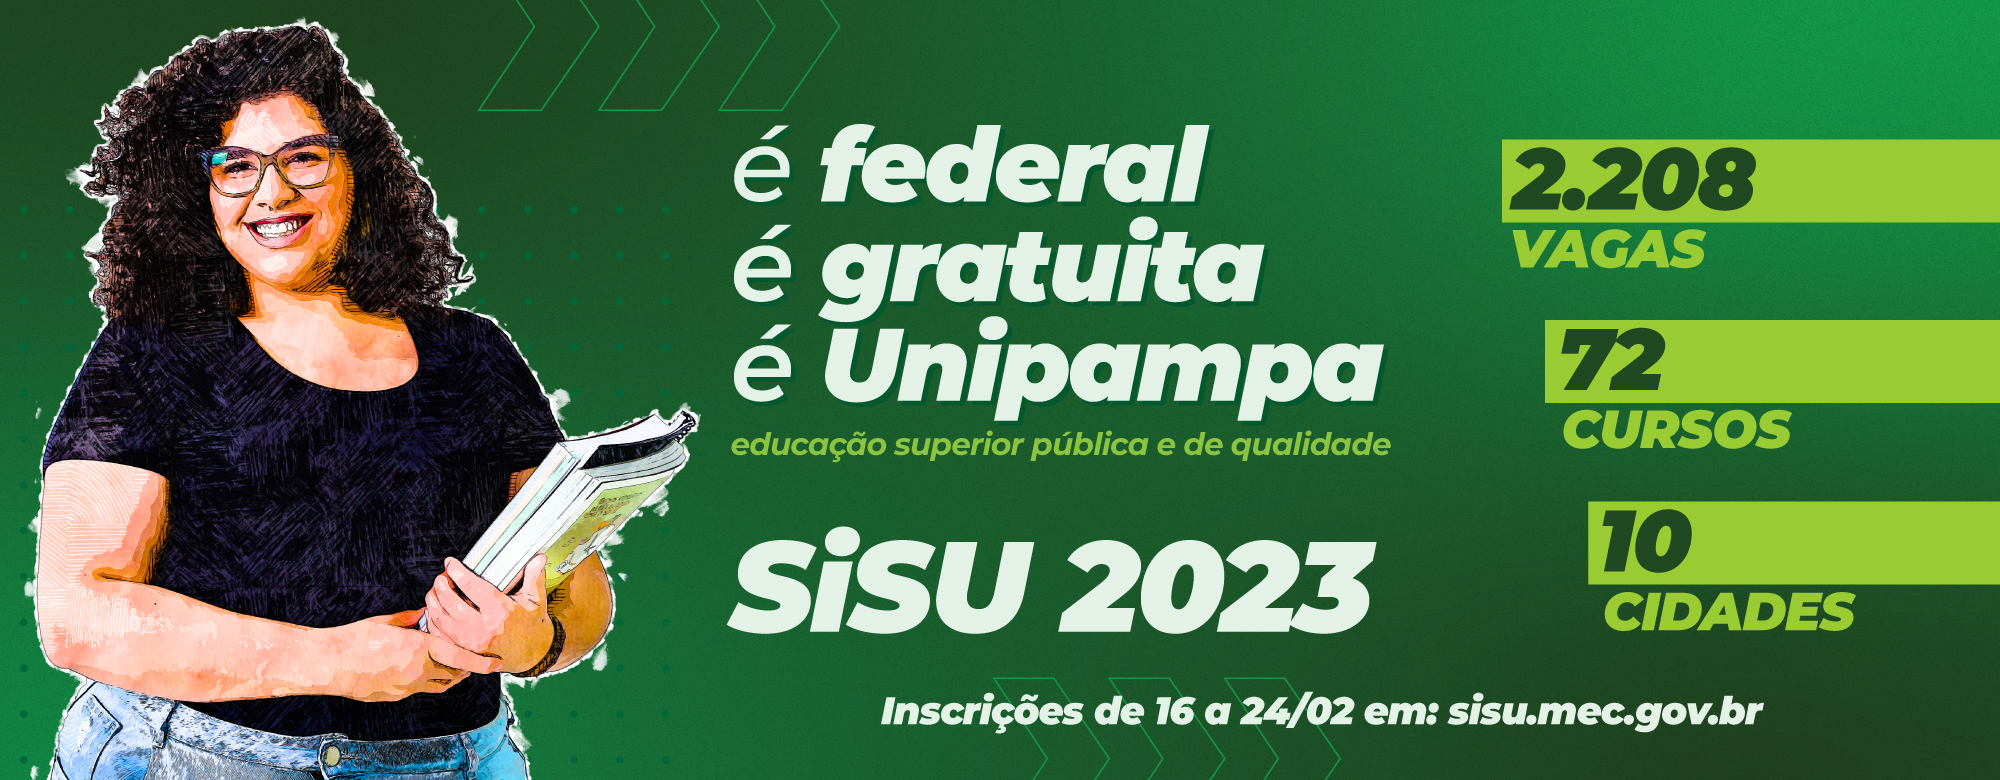 Sisu/Unipampa 2023: 2.208 vagas em 72 cursos de graduação